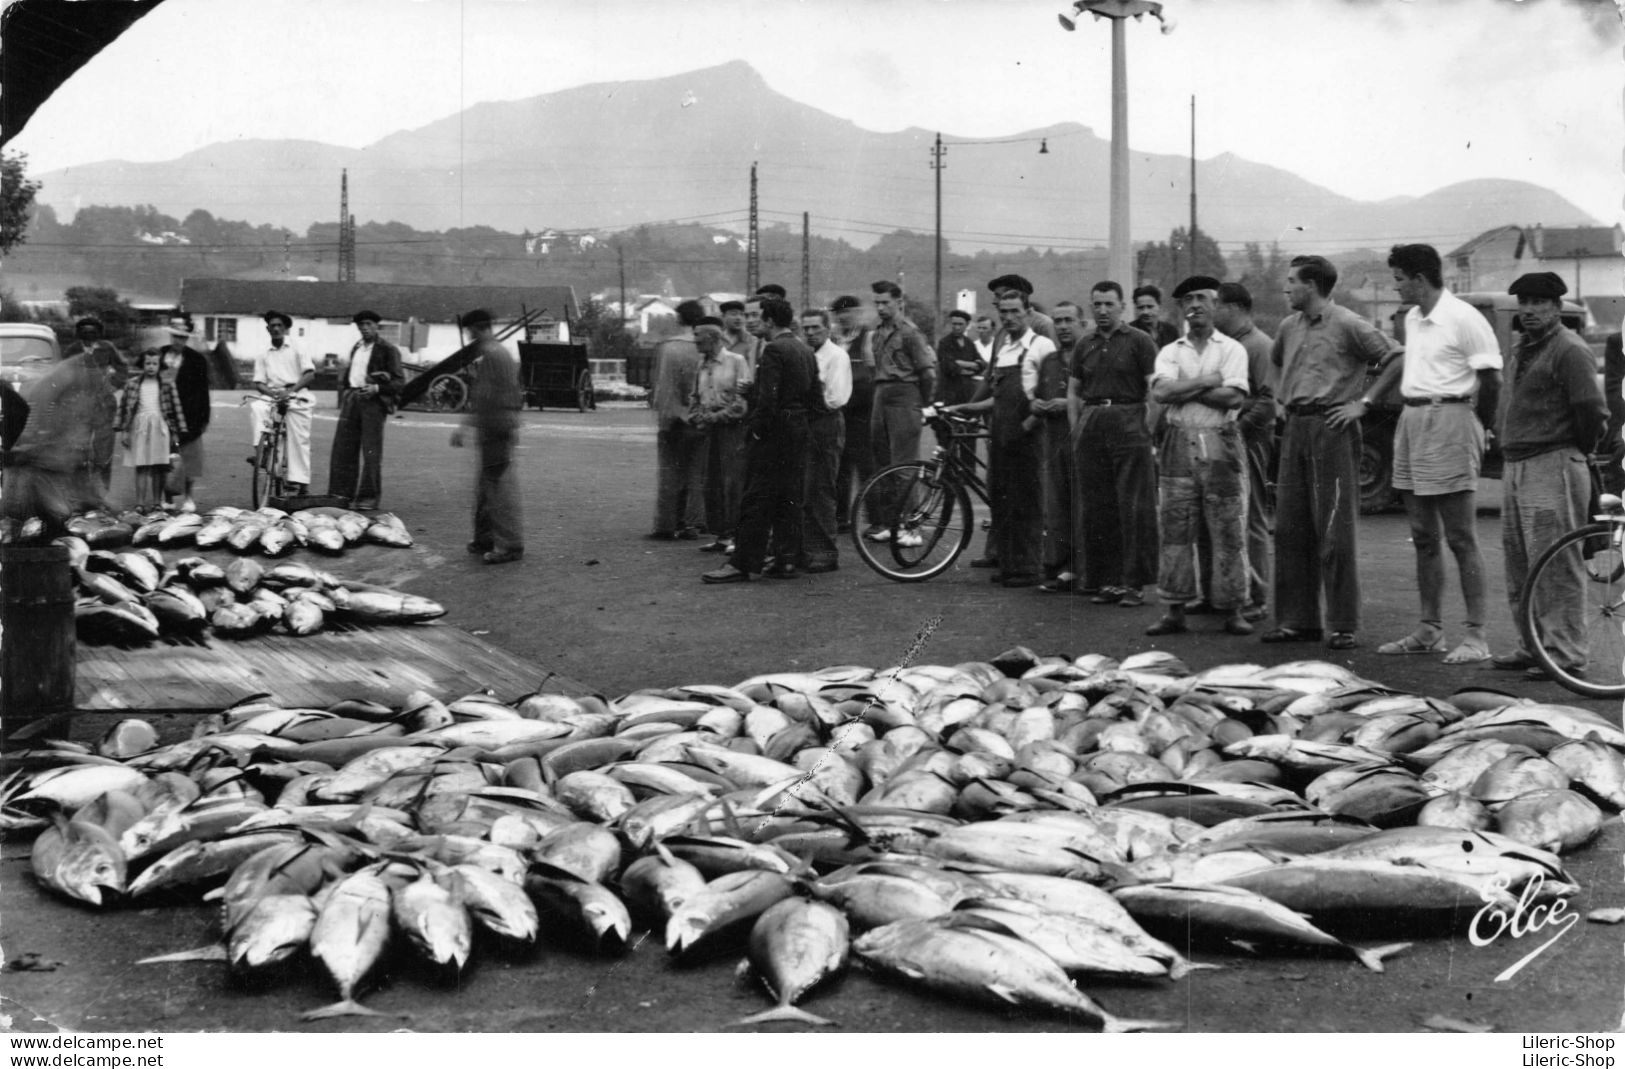 # Métier # Pêcheur # ST-JEAN-de-LUZ  Au Port, Vente De Poisson à La Criée Cpsm PF 1959 - Visvangst